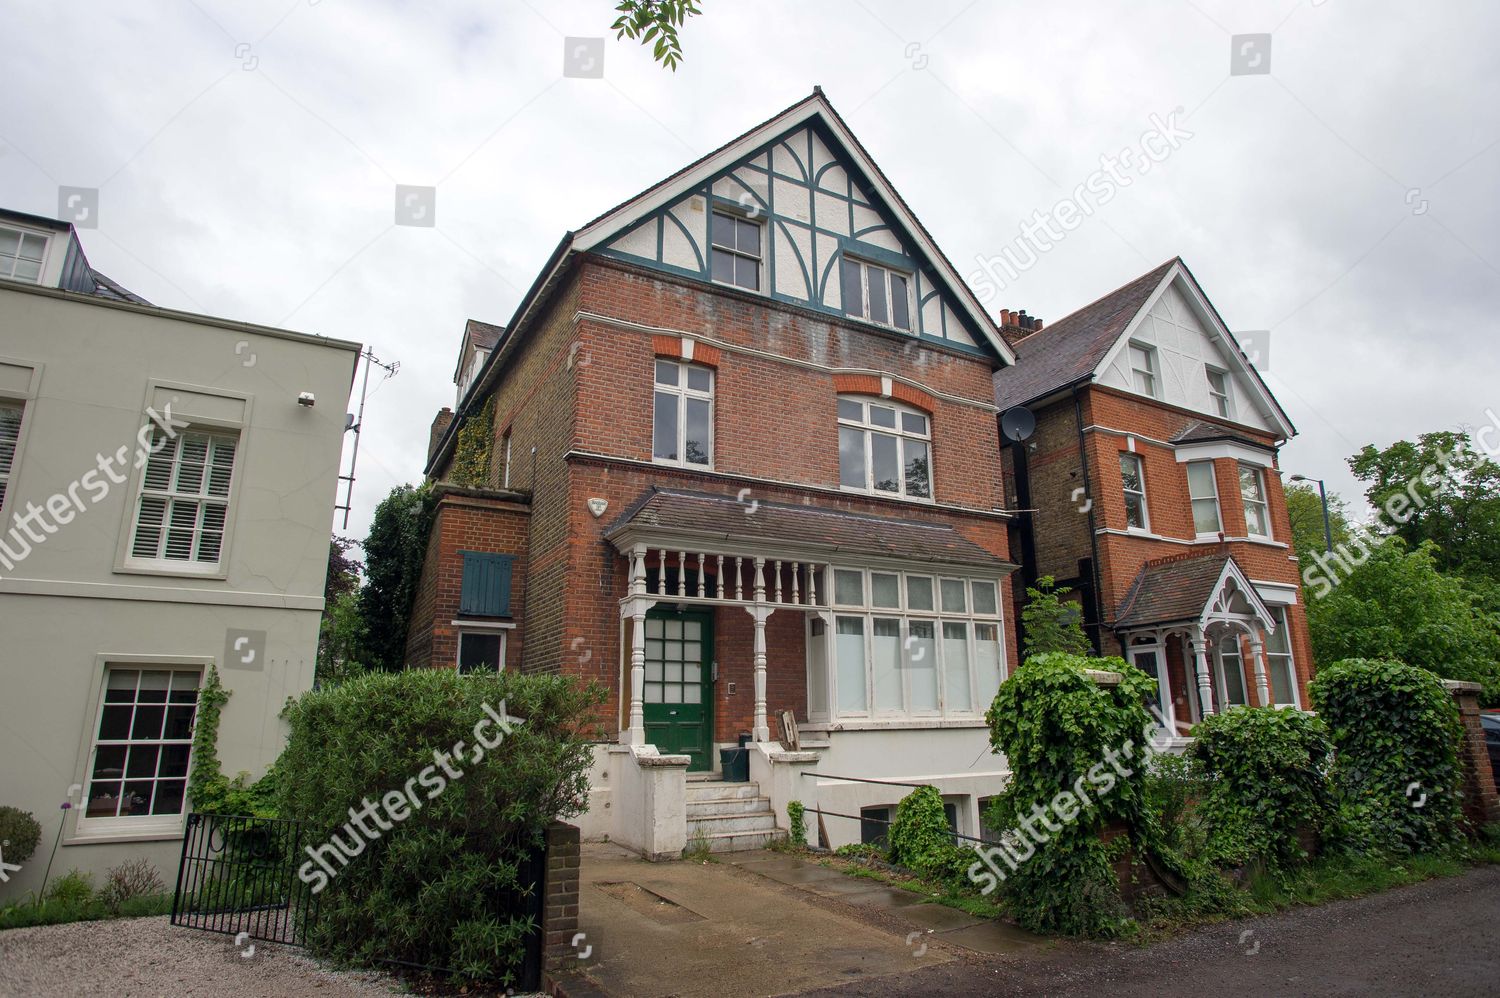 Foto: huis/woning van in Surrey, United Kingdom